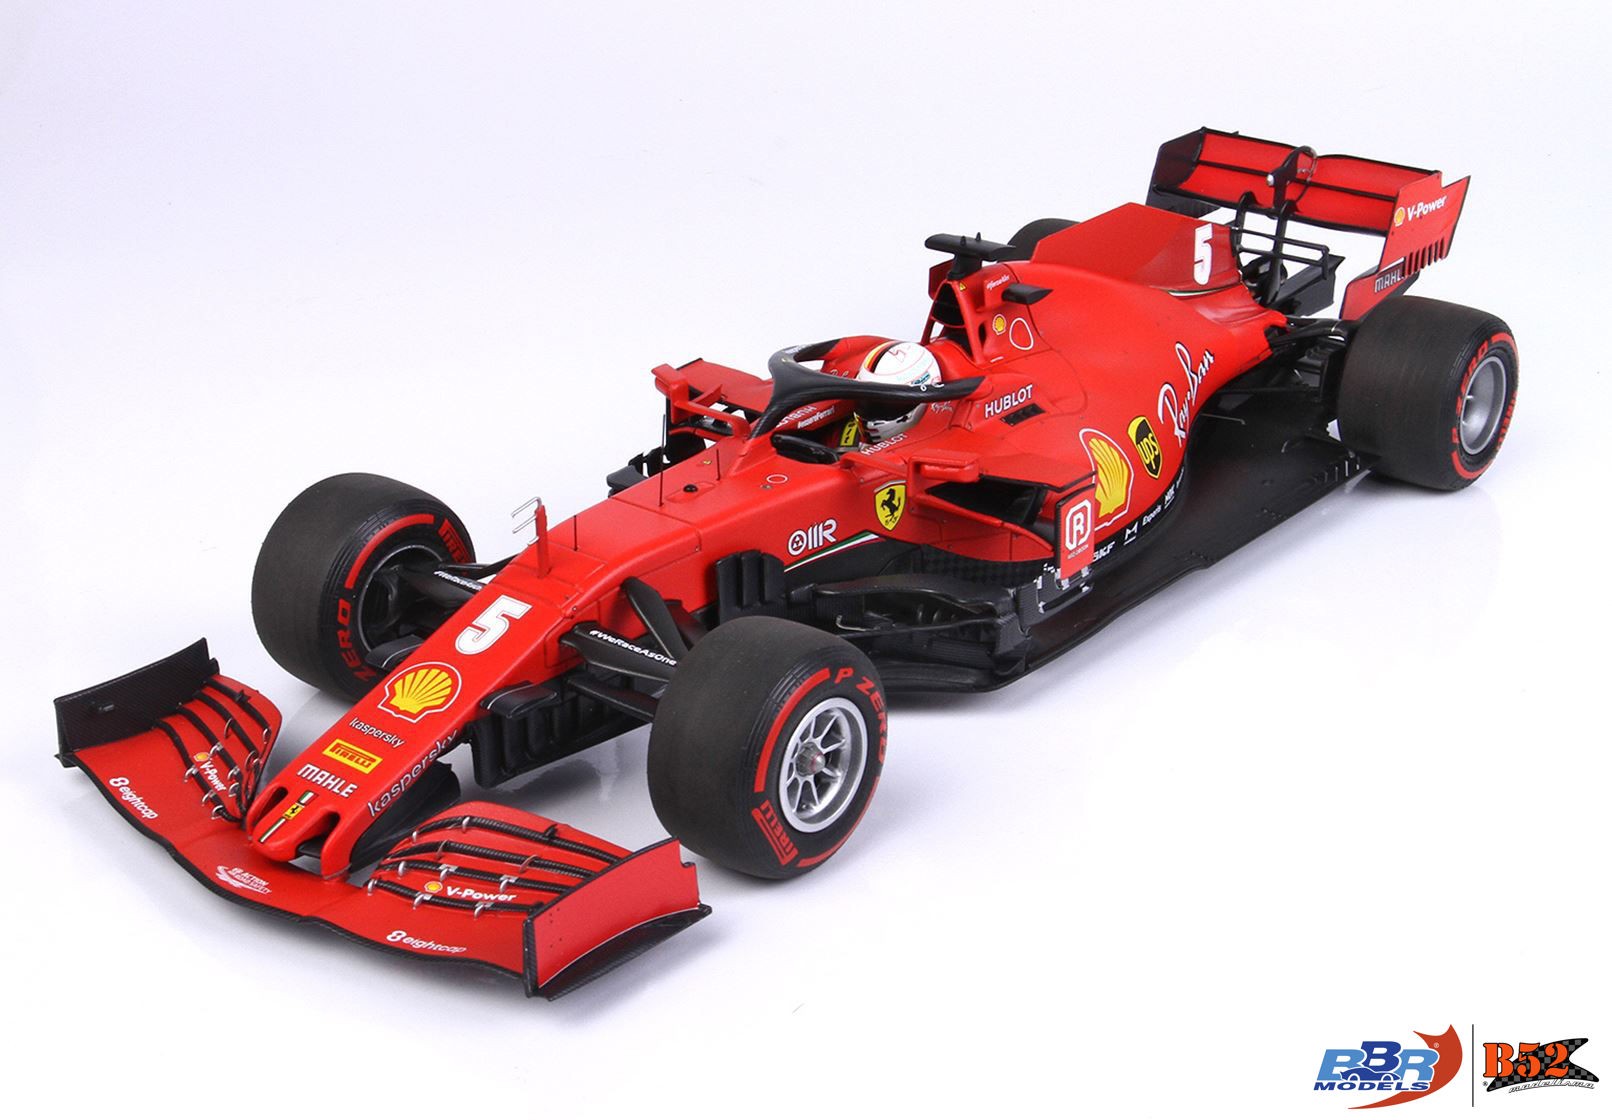 BBR - Ferrari SF1000 Vettel #5, GP Austrian 2020: BBR201805